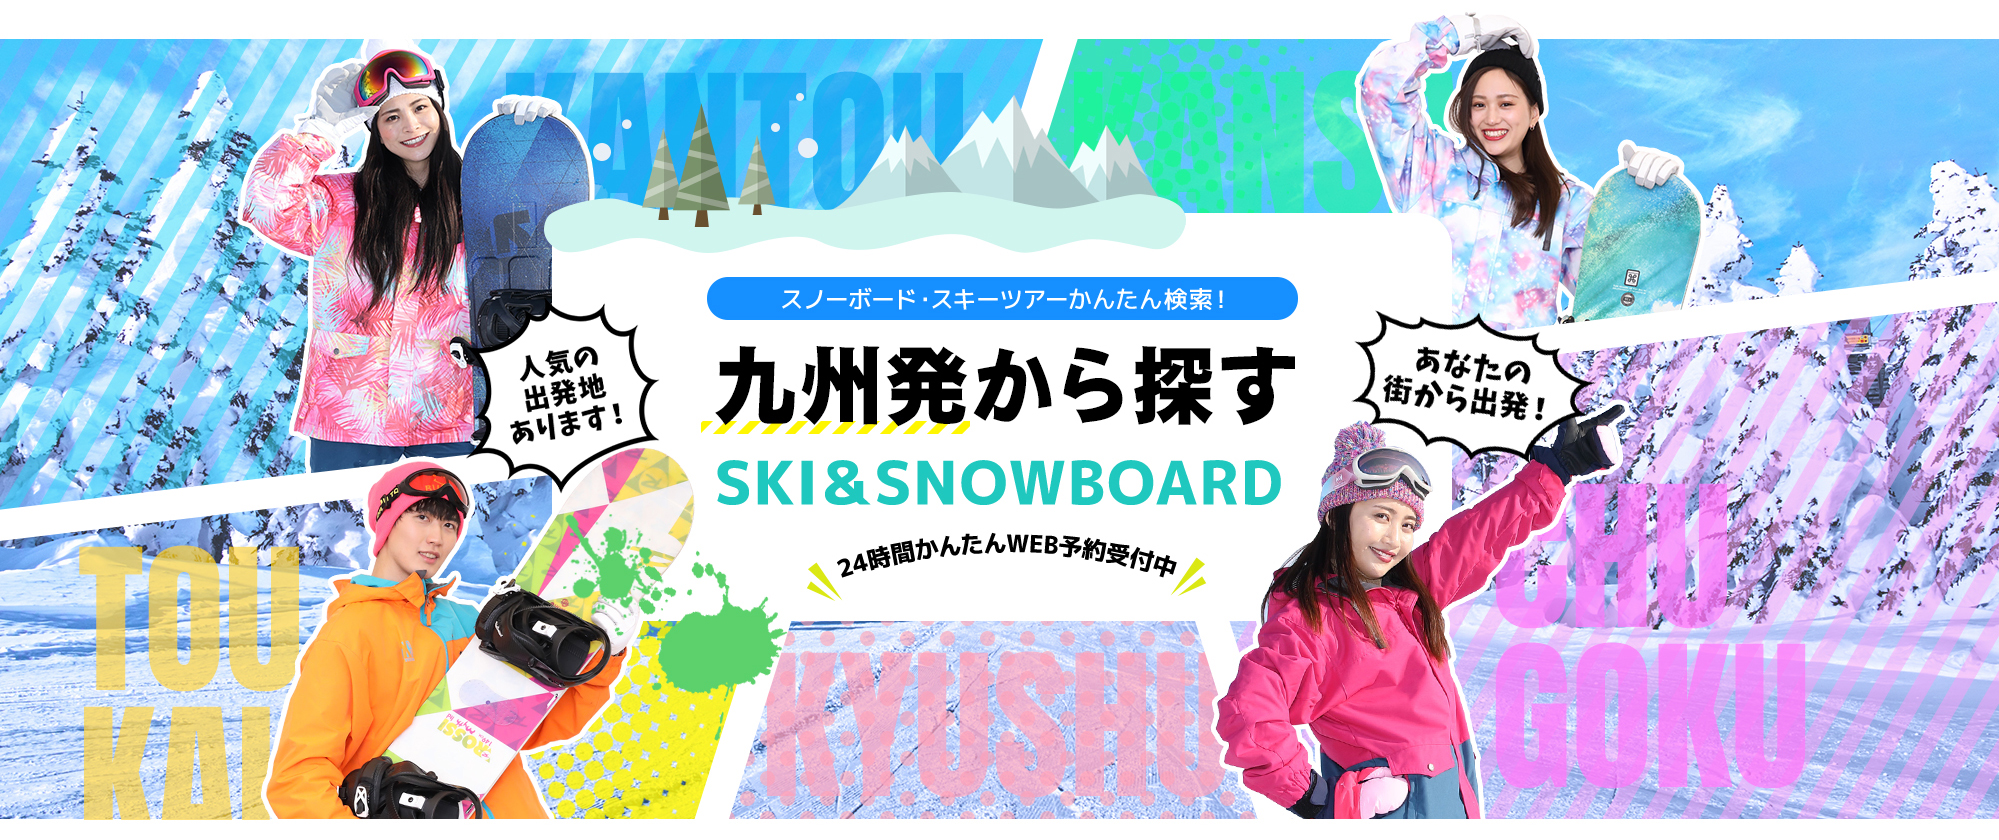 スノーボード・スキーツアーかんたん検索！ 九州発から探す SKI&SNOWBOARD